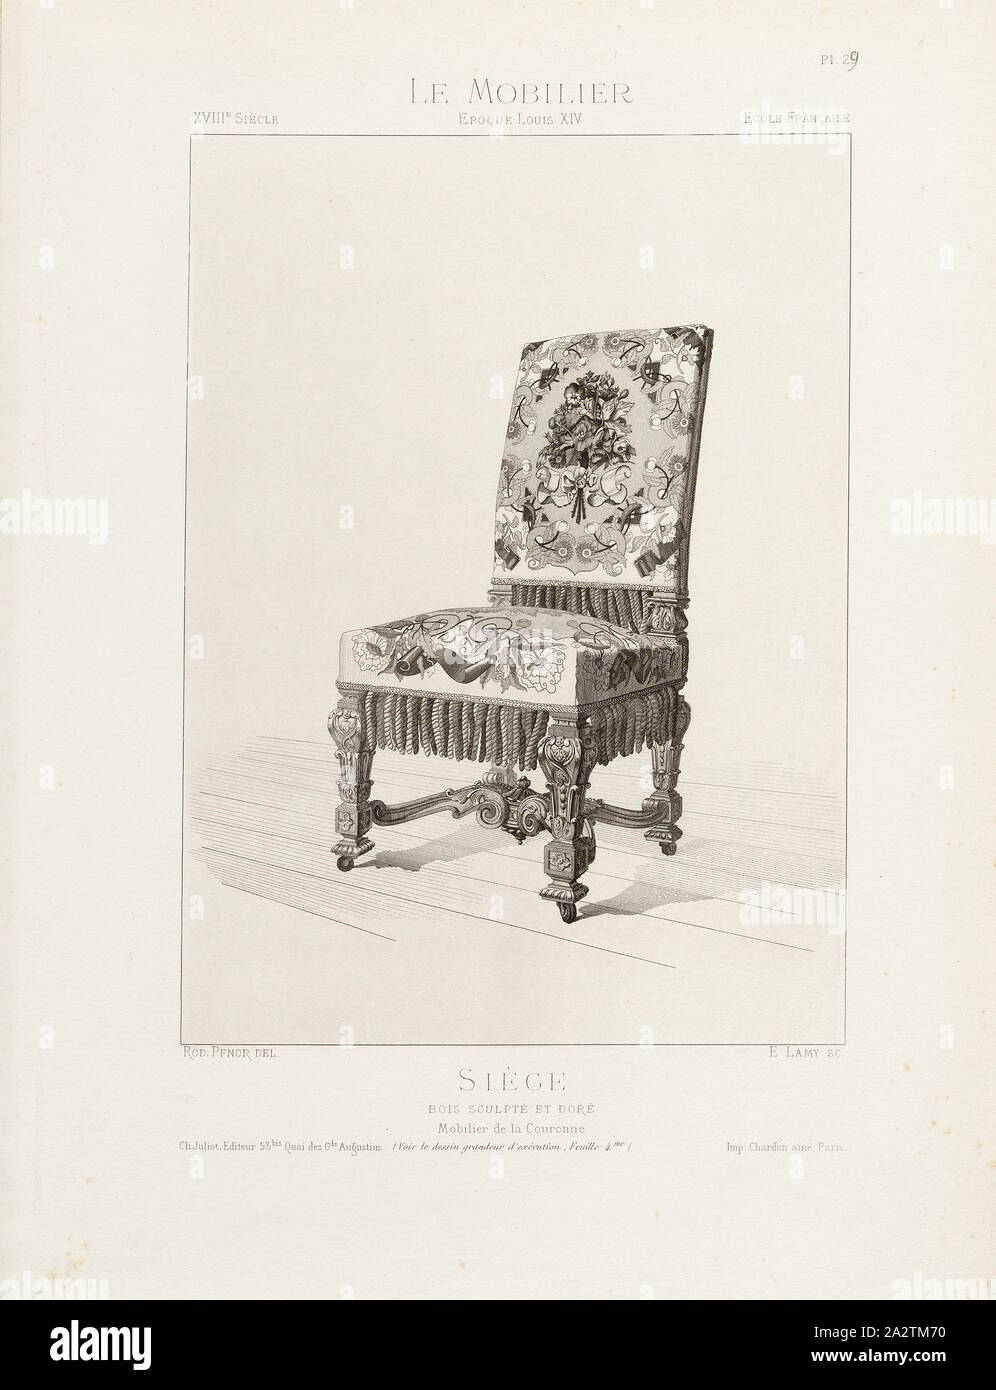 Carved and gilded wooden seat. Crown Furnishings, 18th century armchair (Louis XIV style), Signed: Rod., Pfnor del, E. Lamy, Ch. Juliot, Editeur; Imp. Chardon ainé, Pl. 29, p. 8, Pfnor, Rodolphe (del.); Lamy, E. (sc.); Juliot, Ch. (ed.); Chardon ainé (imp.), Rodolphe Pfnor: Le mobilier de la couronne et des grandes collections publiques et particulières du XIIIe siècle au XIXe siècle: mobilier civil. Mobilier religieux. Meubles, tentures, tapisseries, bronzes et objets d'art de toutes les époques accompagnés de dessins, grandeur d'exécution. Paris: Ch. Juliot, Editeur: Librairie Générale de L' Stock Photo